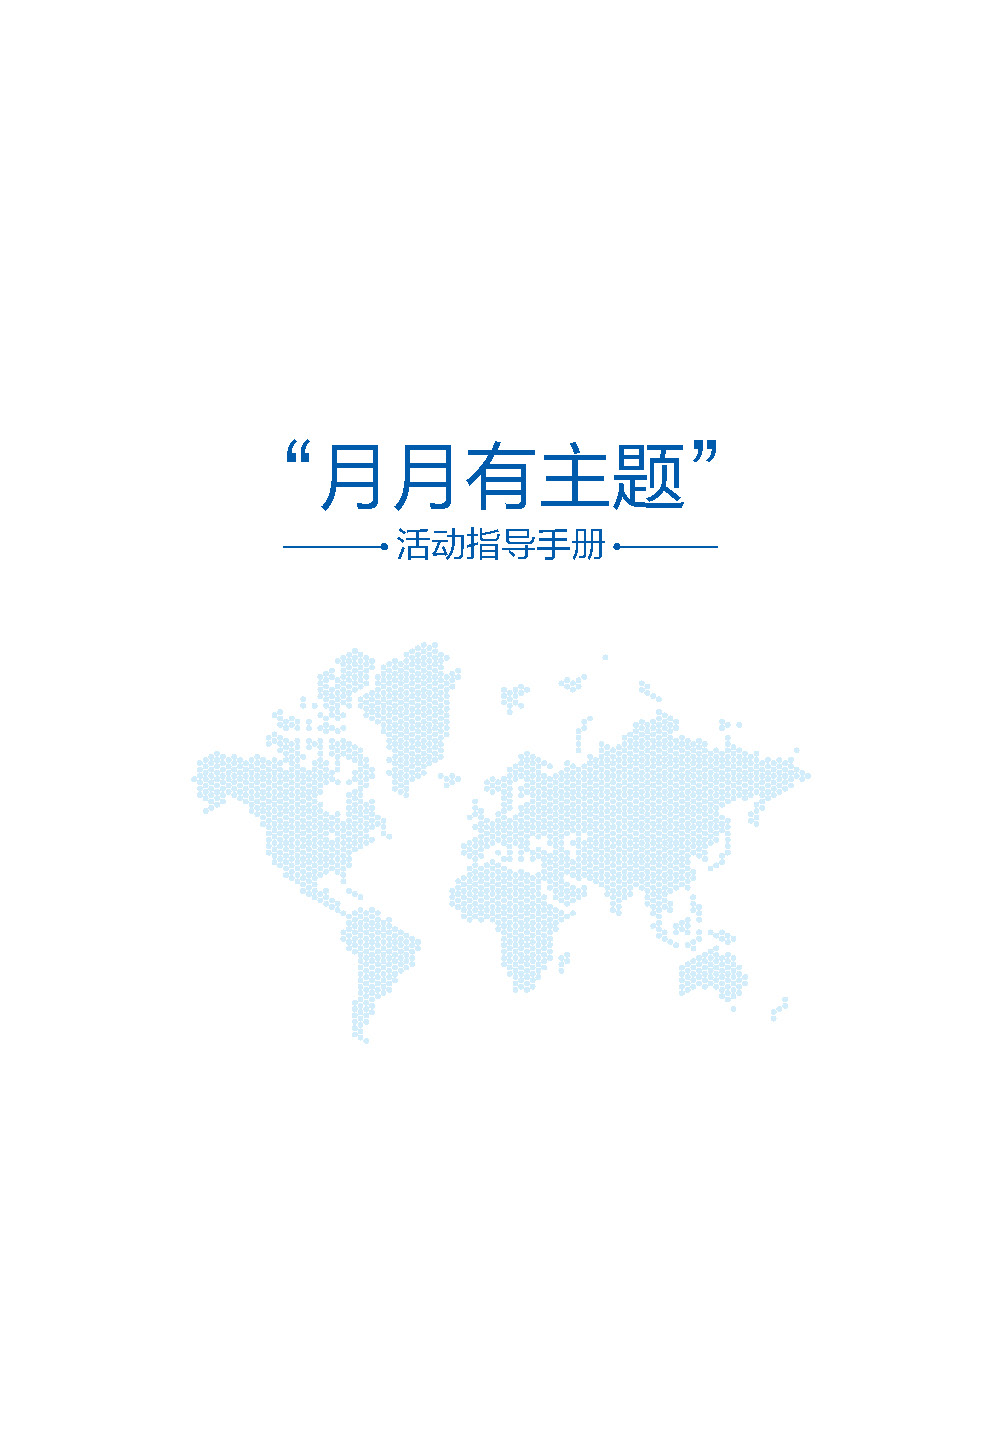 中国电建集团海外投资有限公司《“月月有主题”活动指导手册2020版》